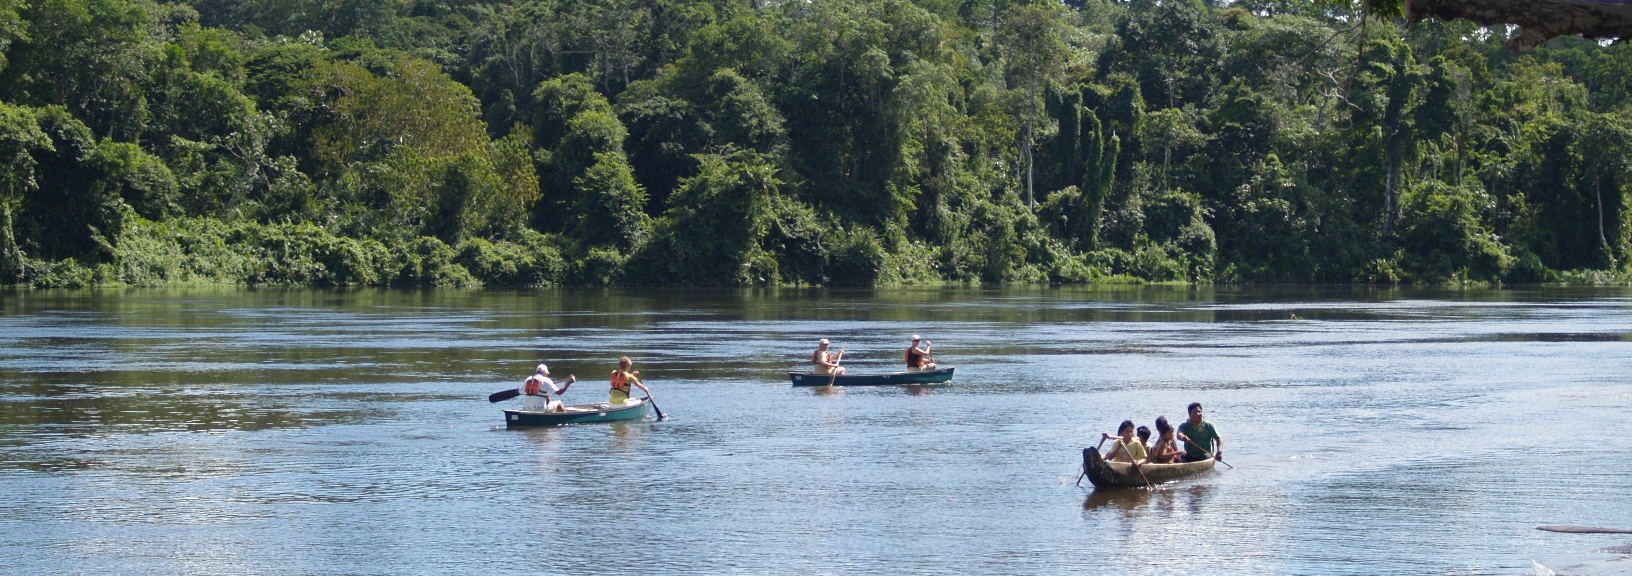 Paddelnde Touristen und Indianer auf dem Tapanahony River in Suriname